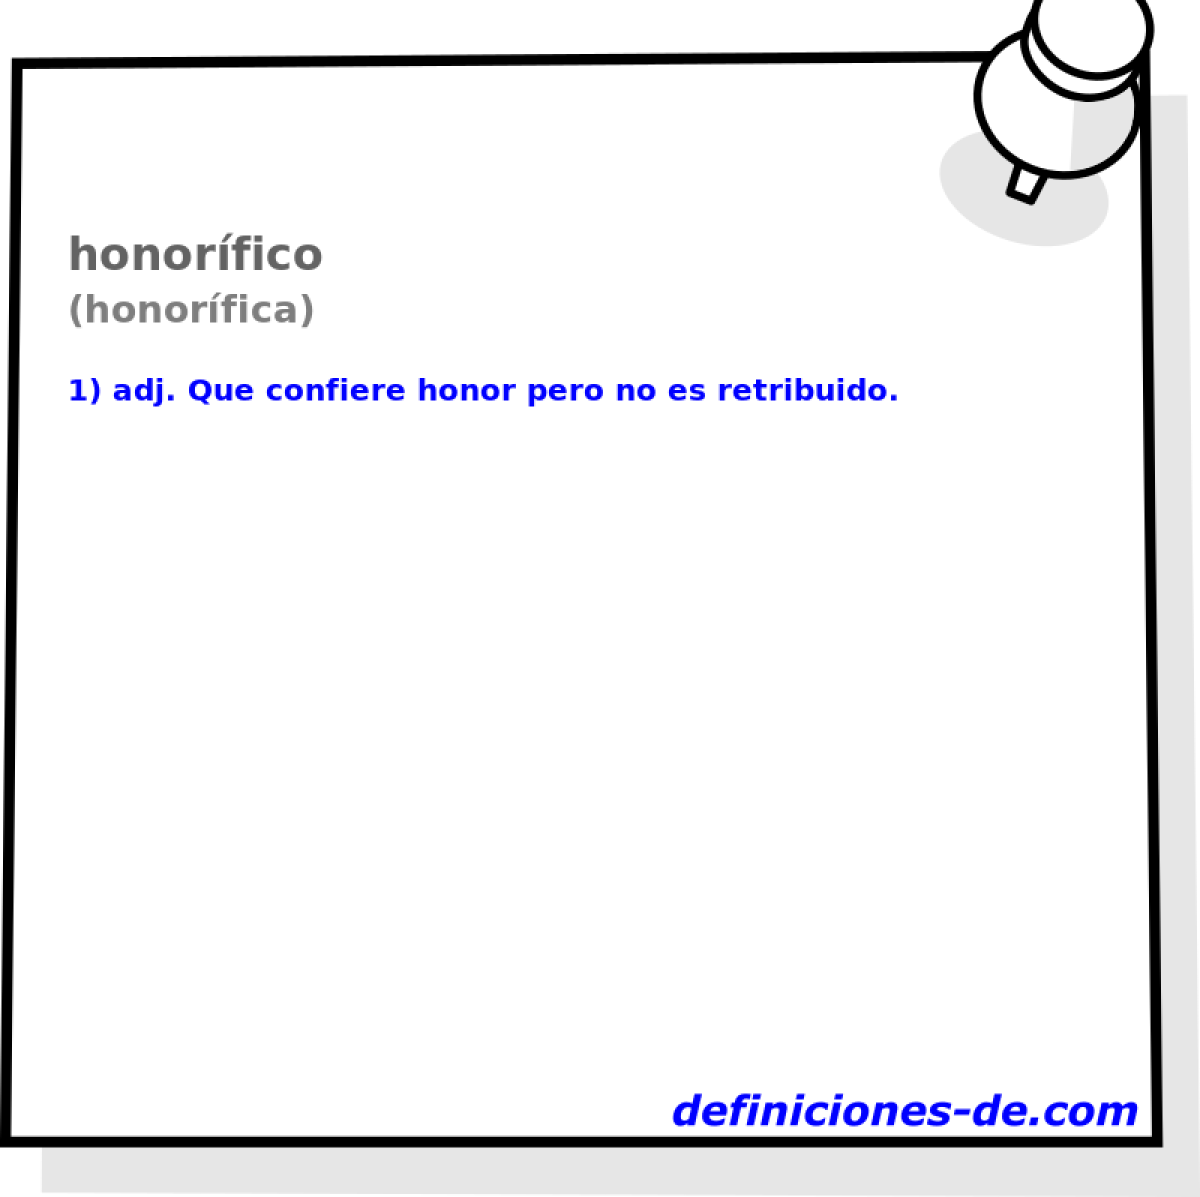 honorfico (honorfica)